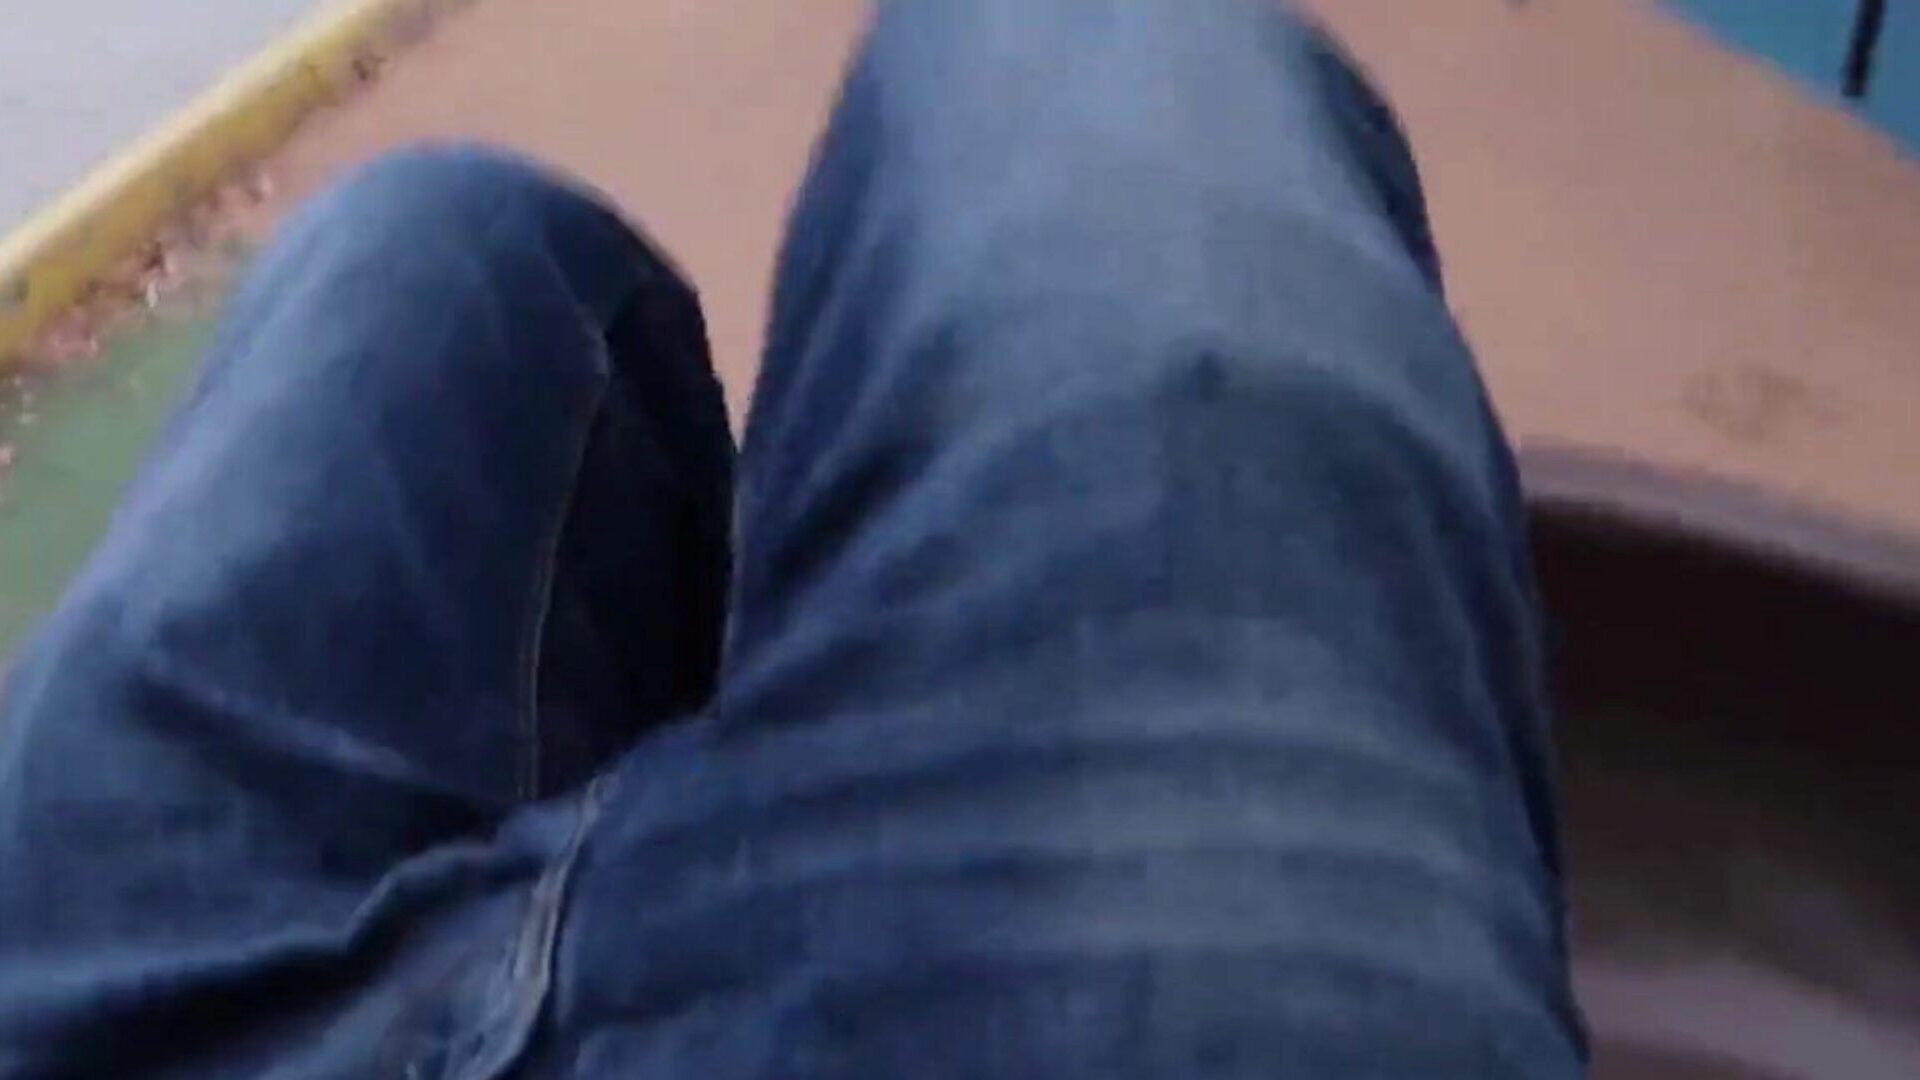 Джонни Гудлак, грудастая Nickey Huntsman скачет на члене на улице в видео от первого лица